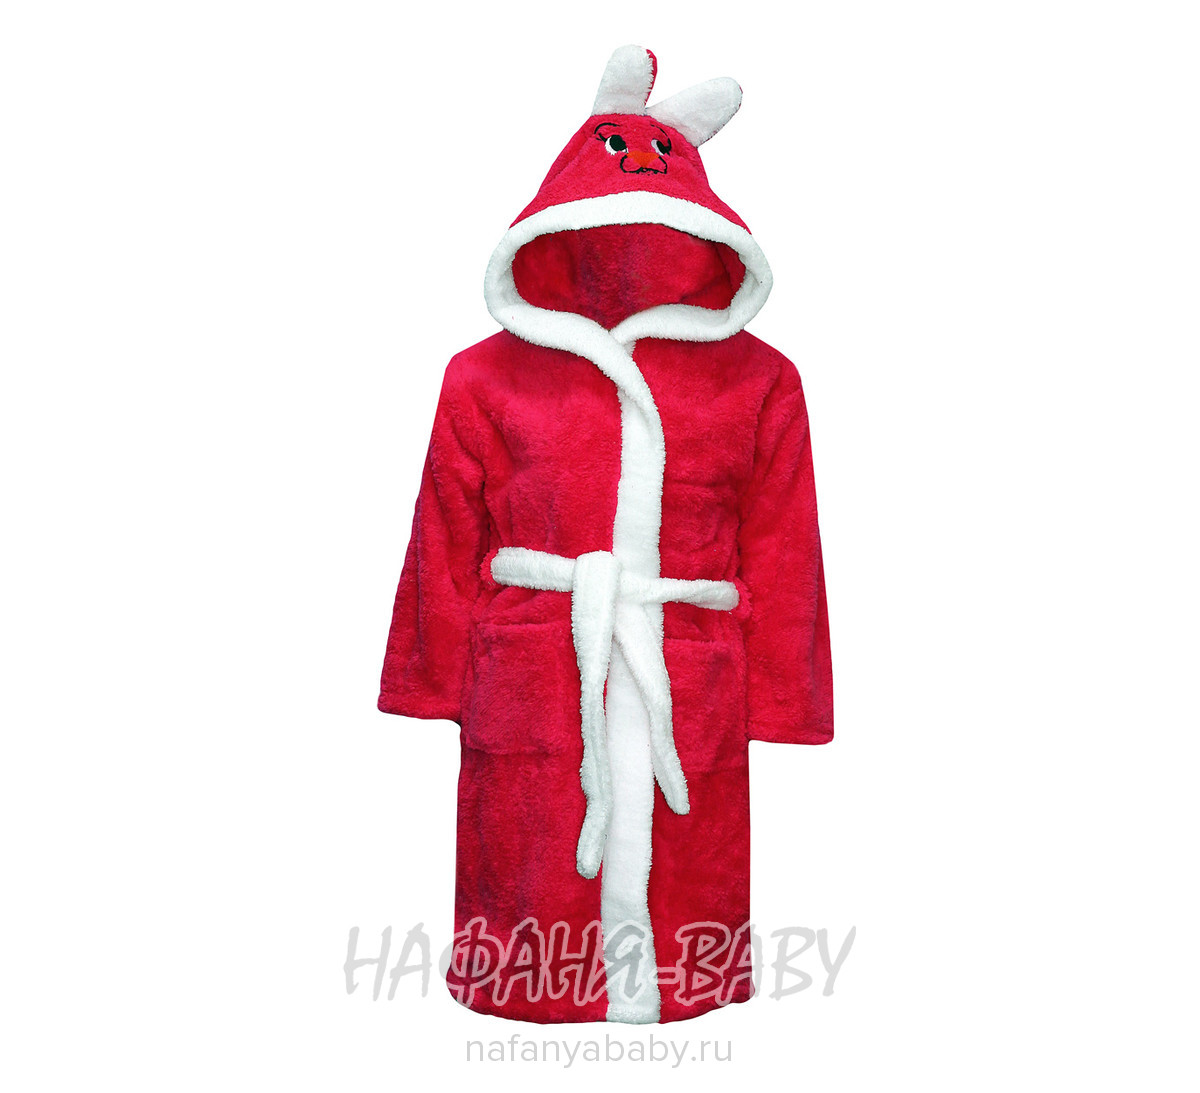 Детский теплый халат BAMBOO, купить в интернет магазине Нафаня. арт: 2934.